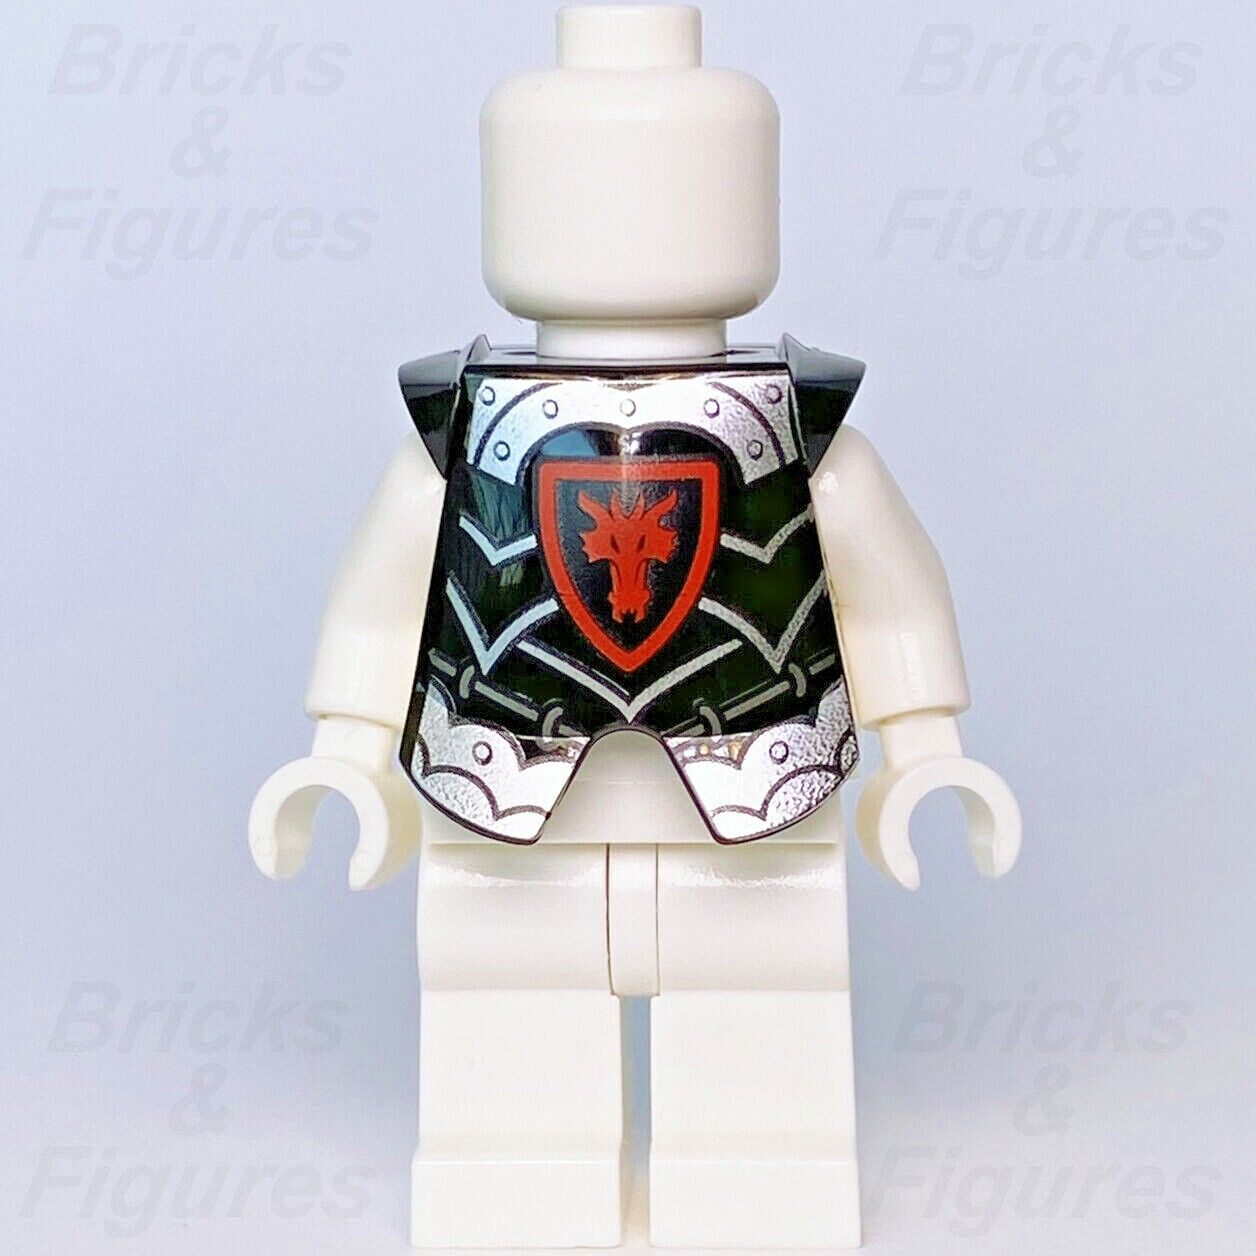 LEGO 創作② 組立戦隊レゴレンジャー レゴレッドのフレイムロボット-